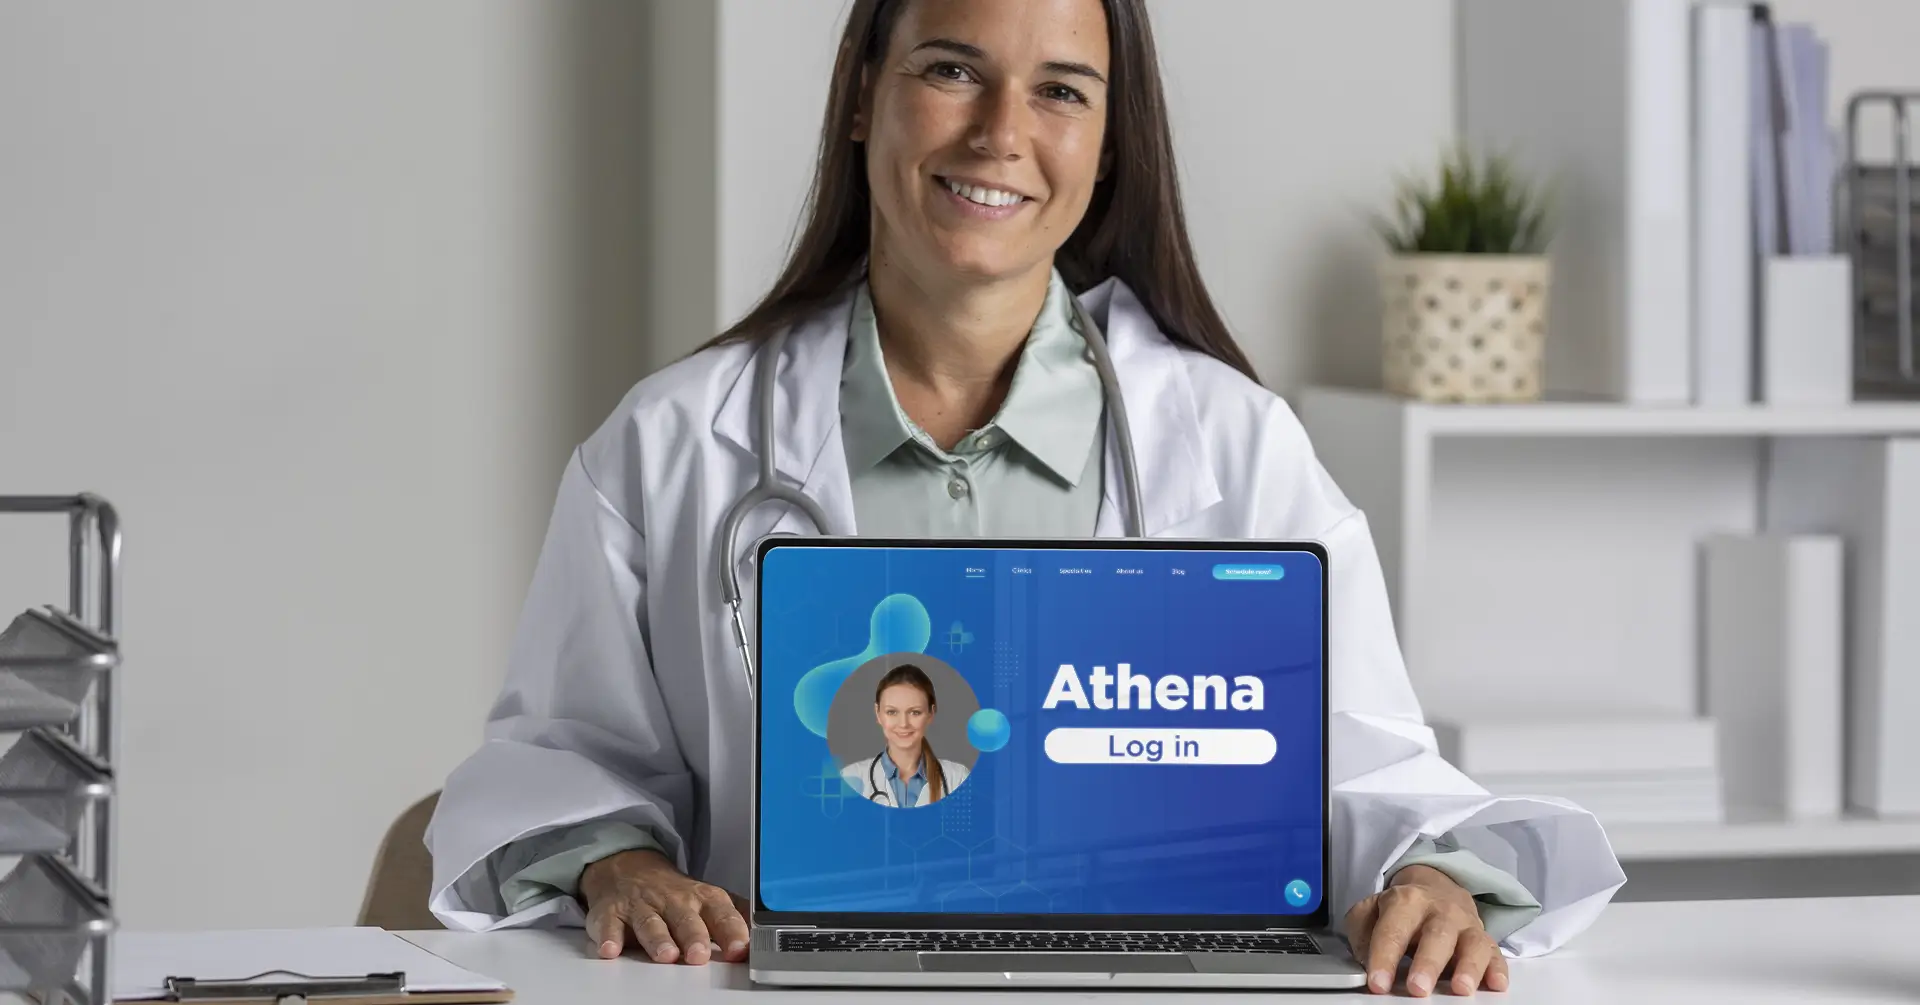 Athena provider login